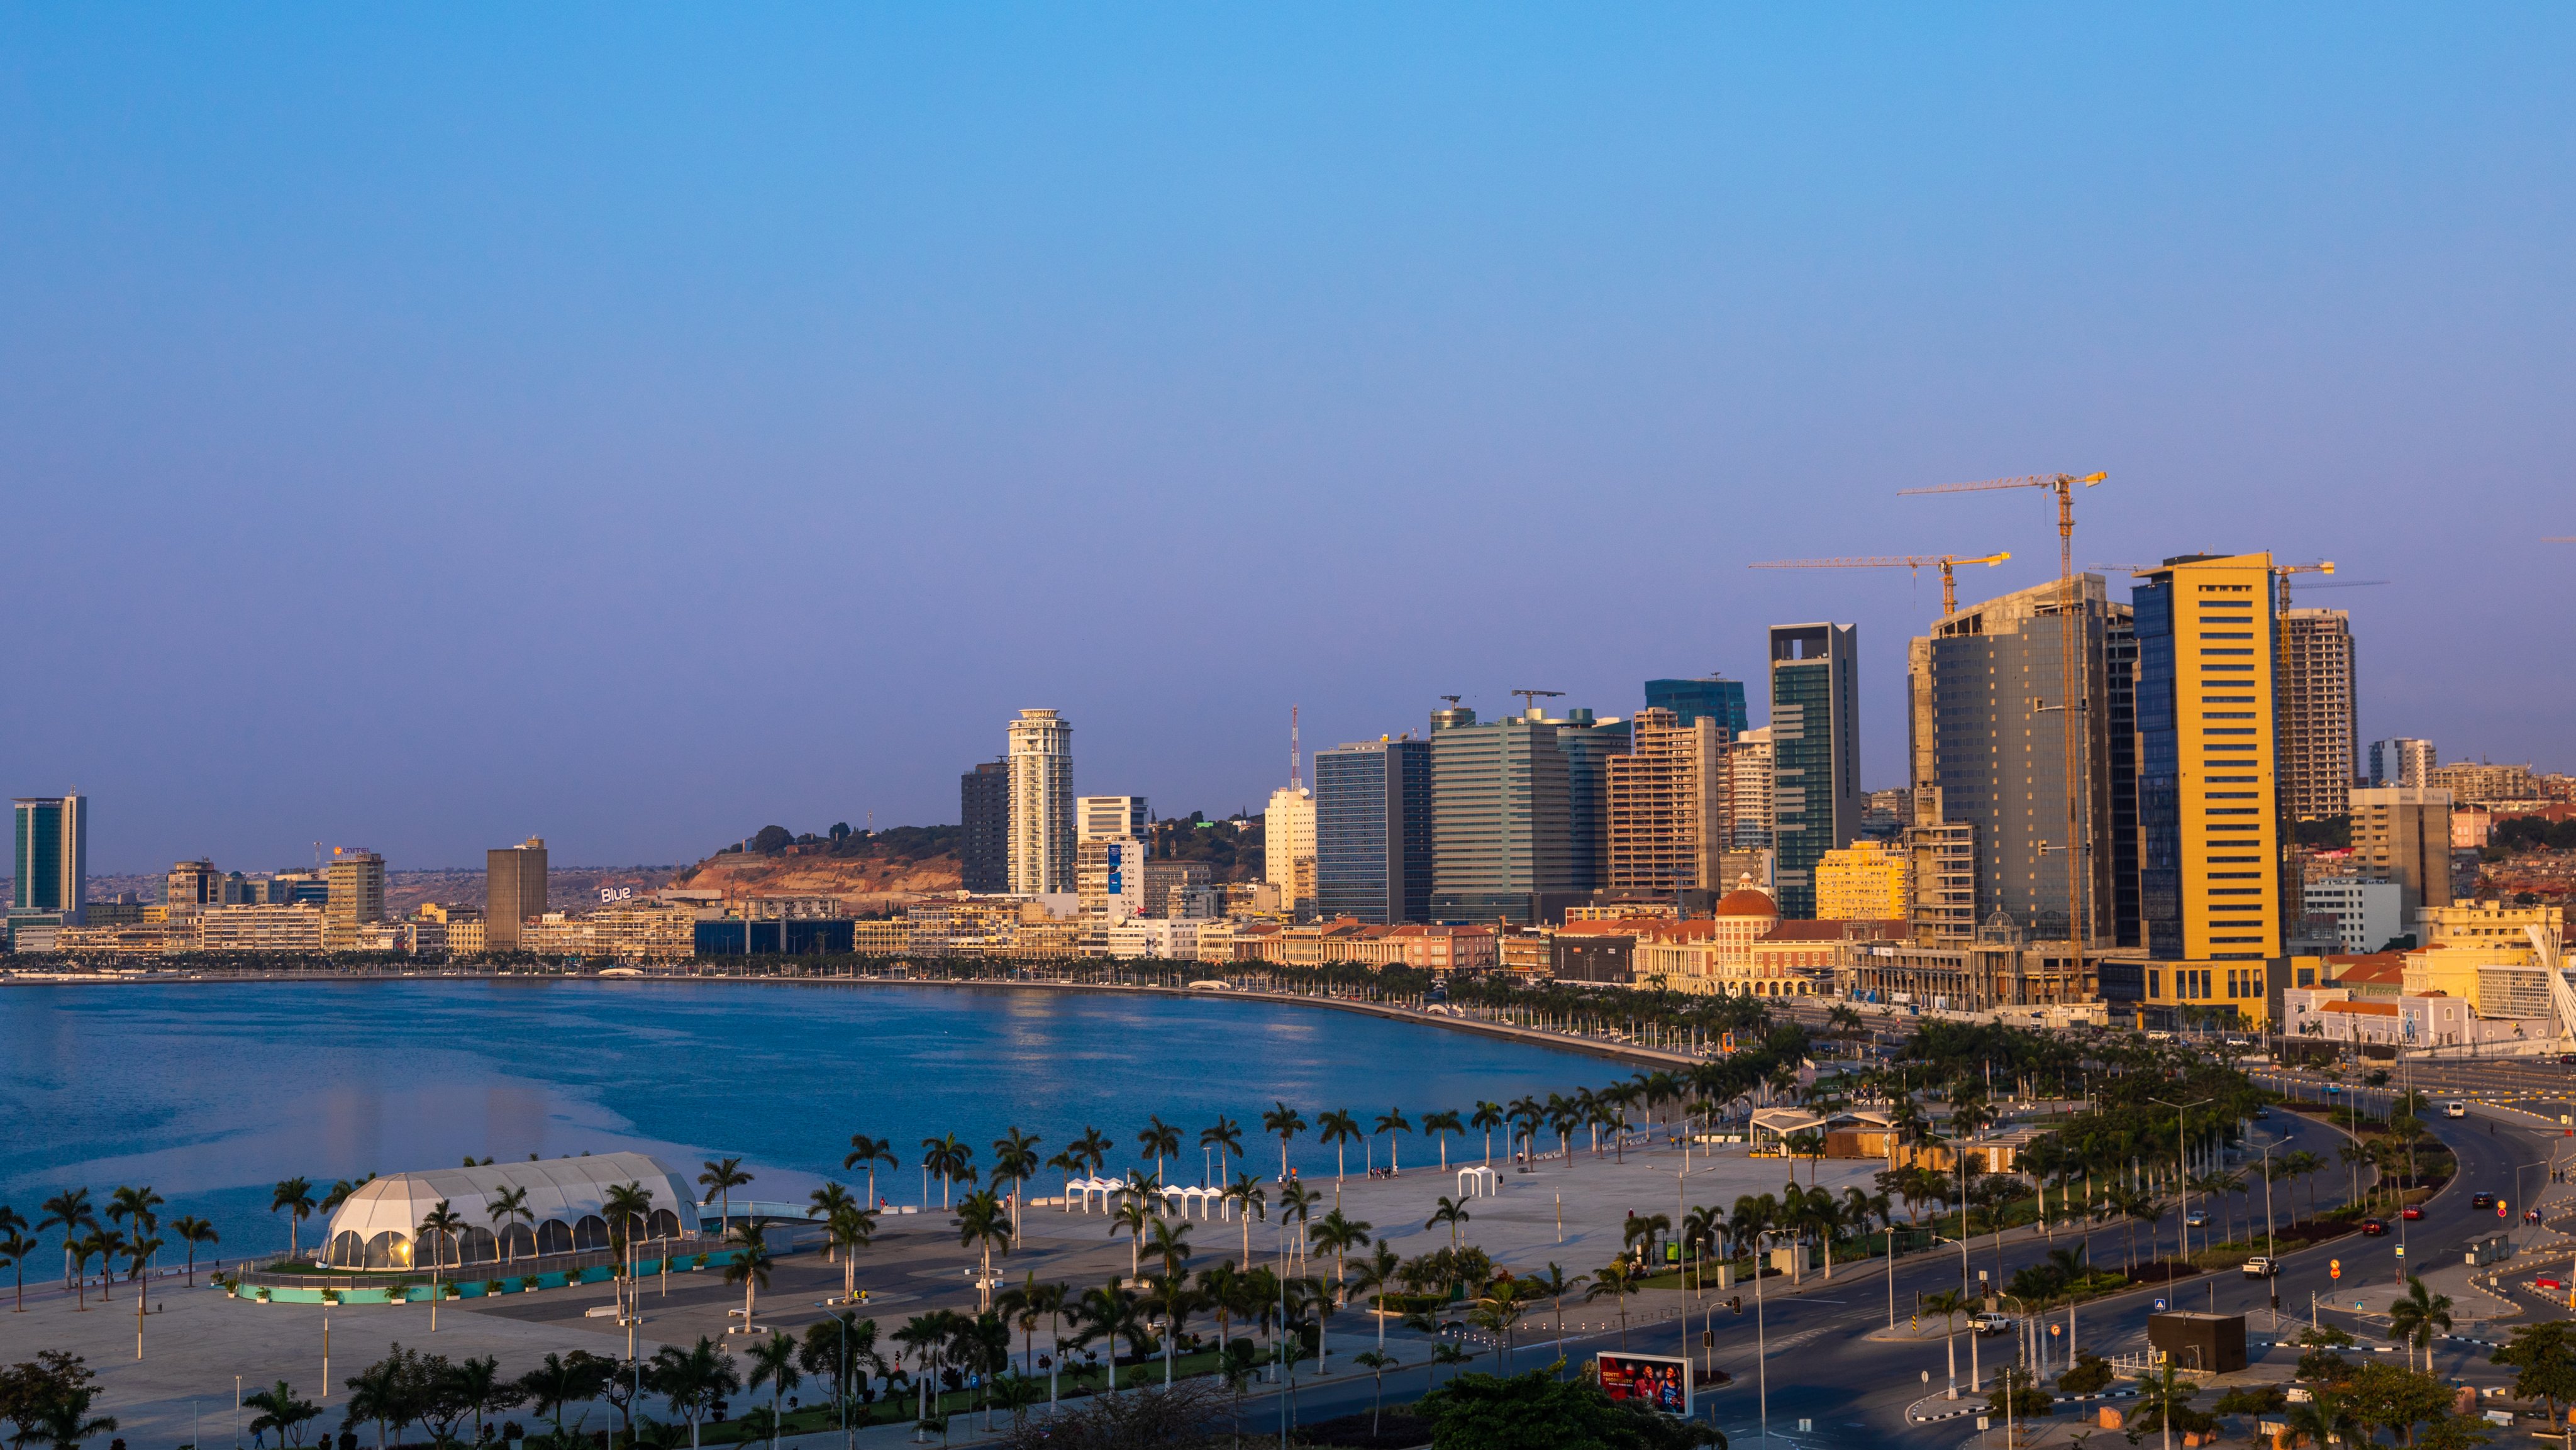 View over the new Marginal promenade called avenida 4 de fevereiro, Luanda Province, Luanda, Angola